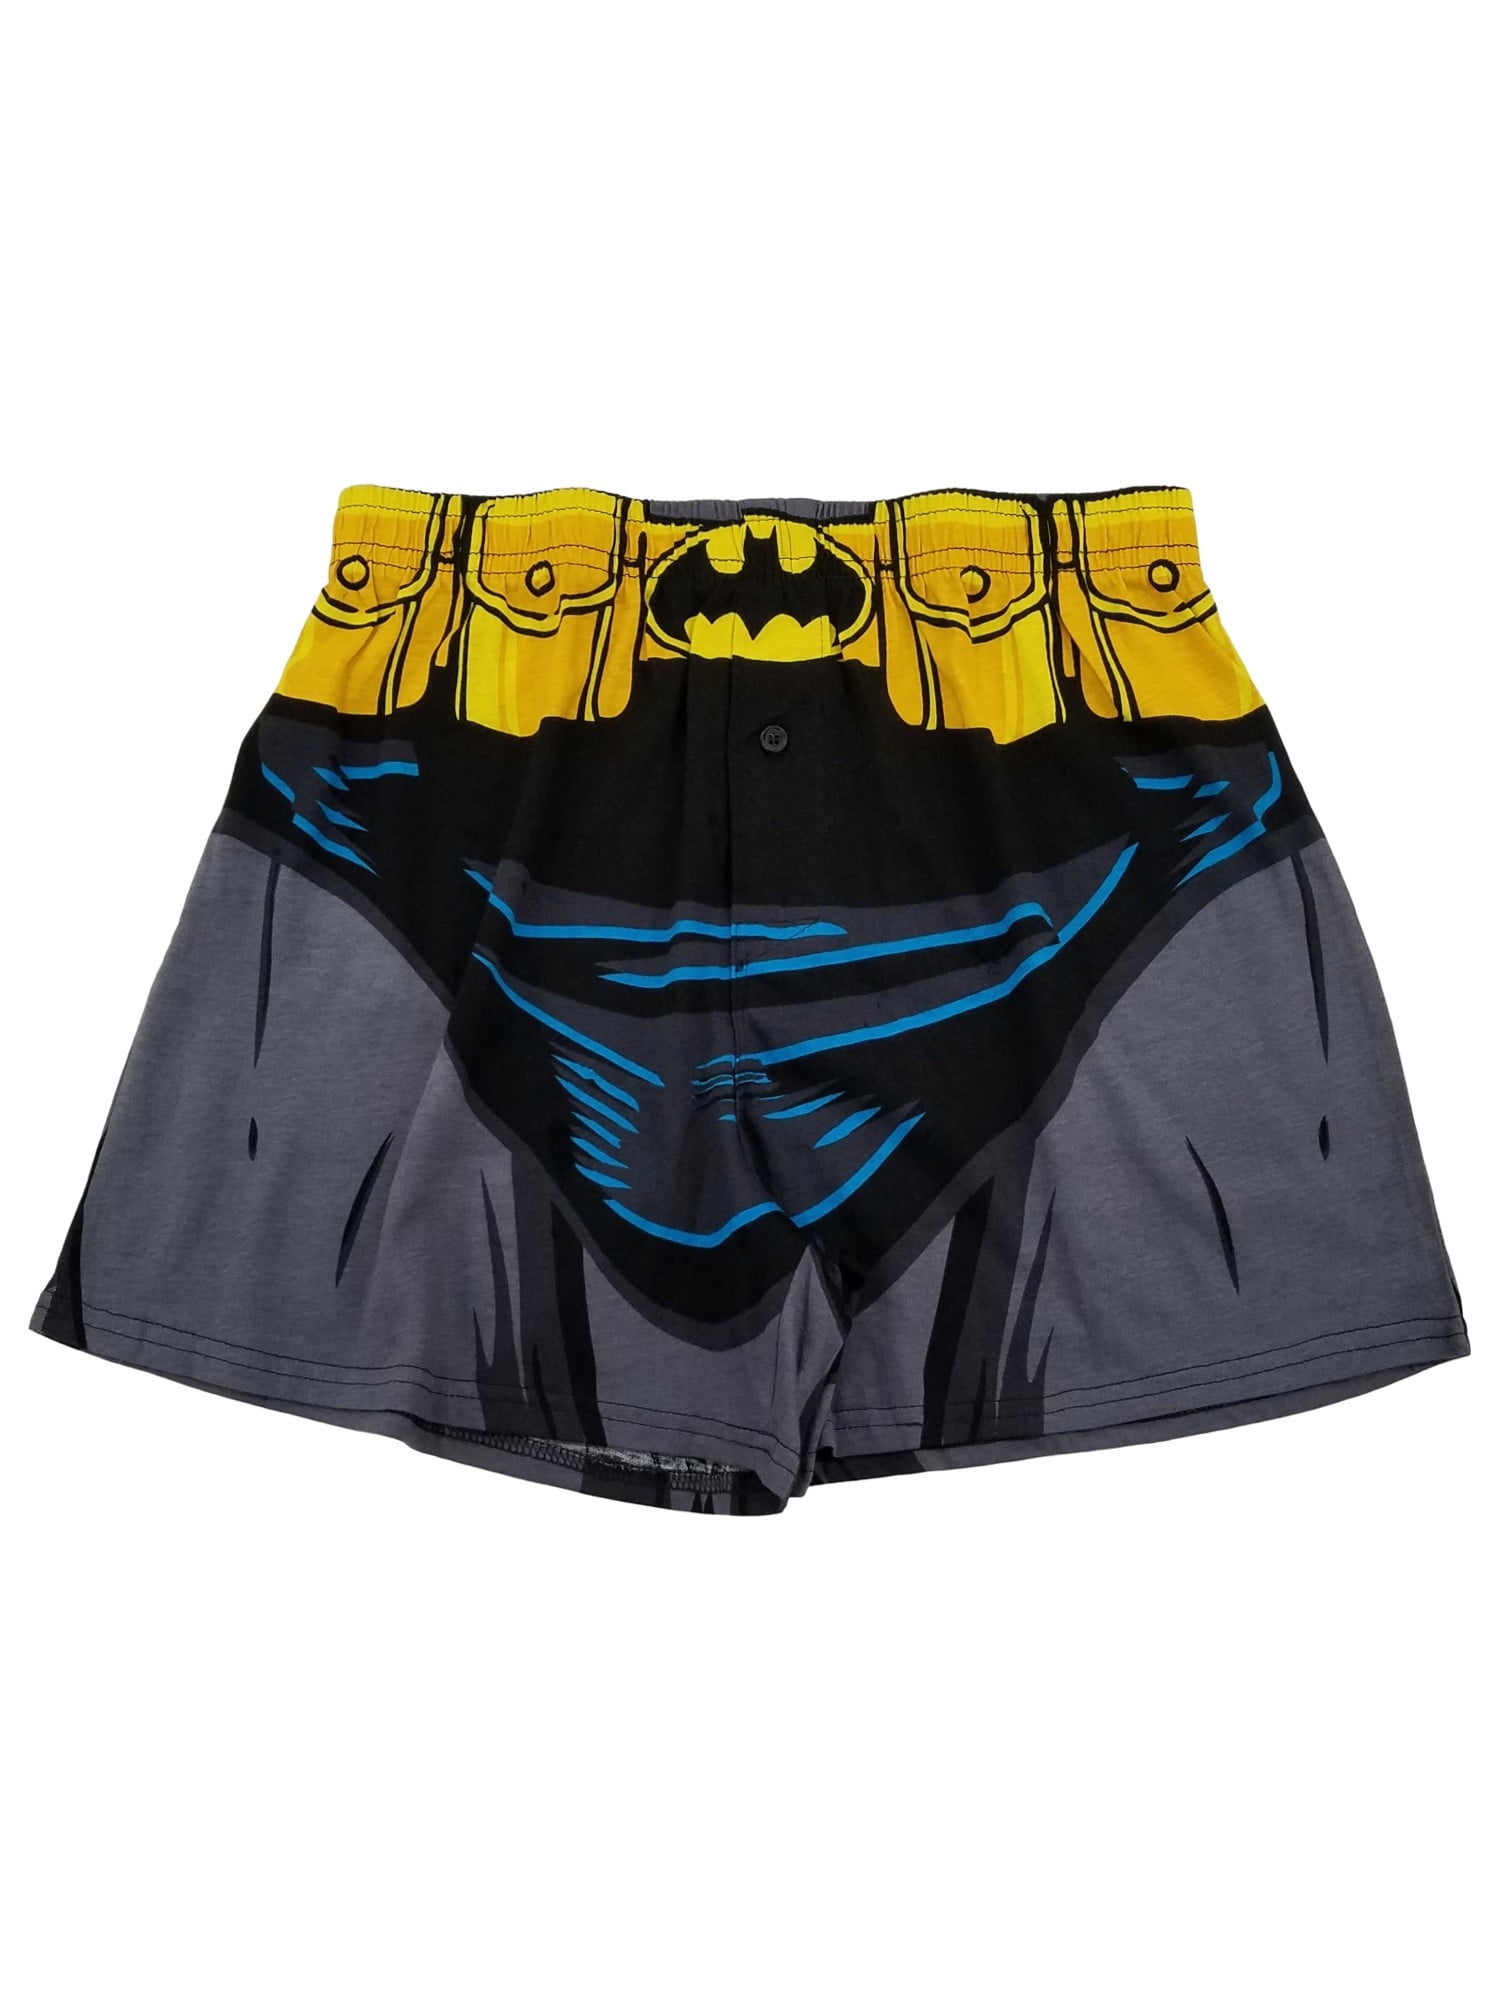 Superman Classic Men's Underwear Boxer Briefs-Large (36-38